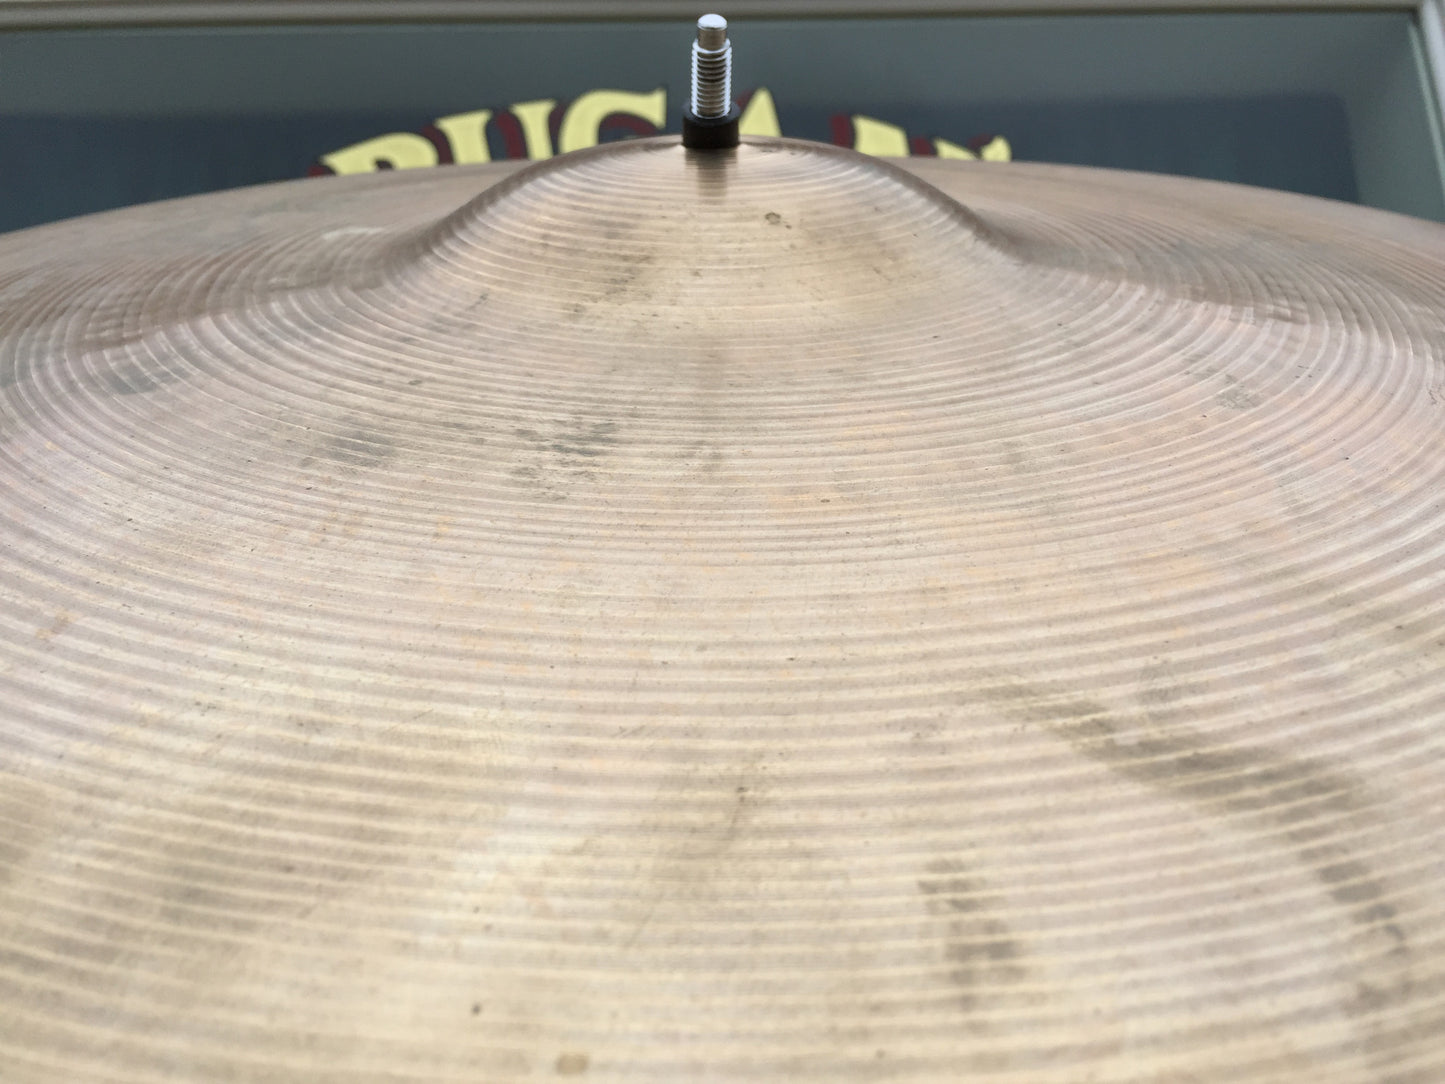 22" 1960's Zildjian A Ride Cymbal 2718g #344